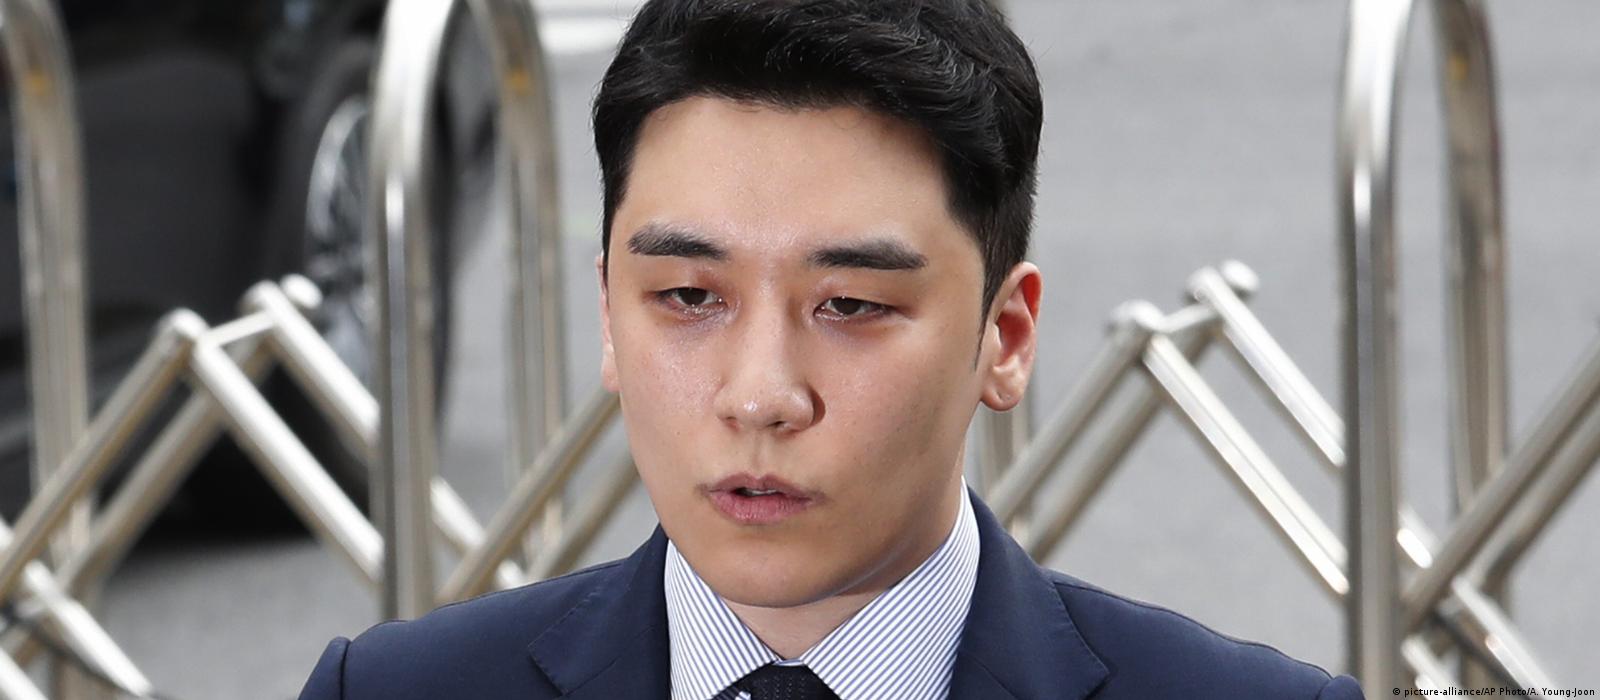 Zijdelings Voorbereiding Voor een dagje uit South Korean pop star jailed for 3 years in sex scandal – DW – 08/12/2021